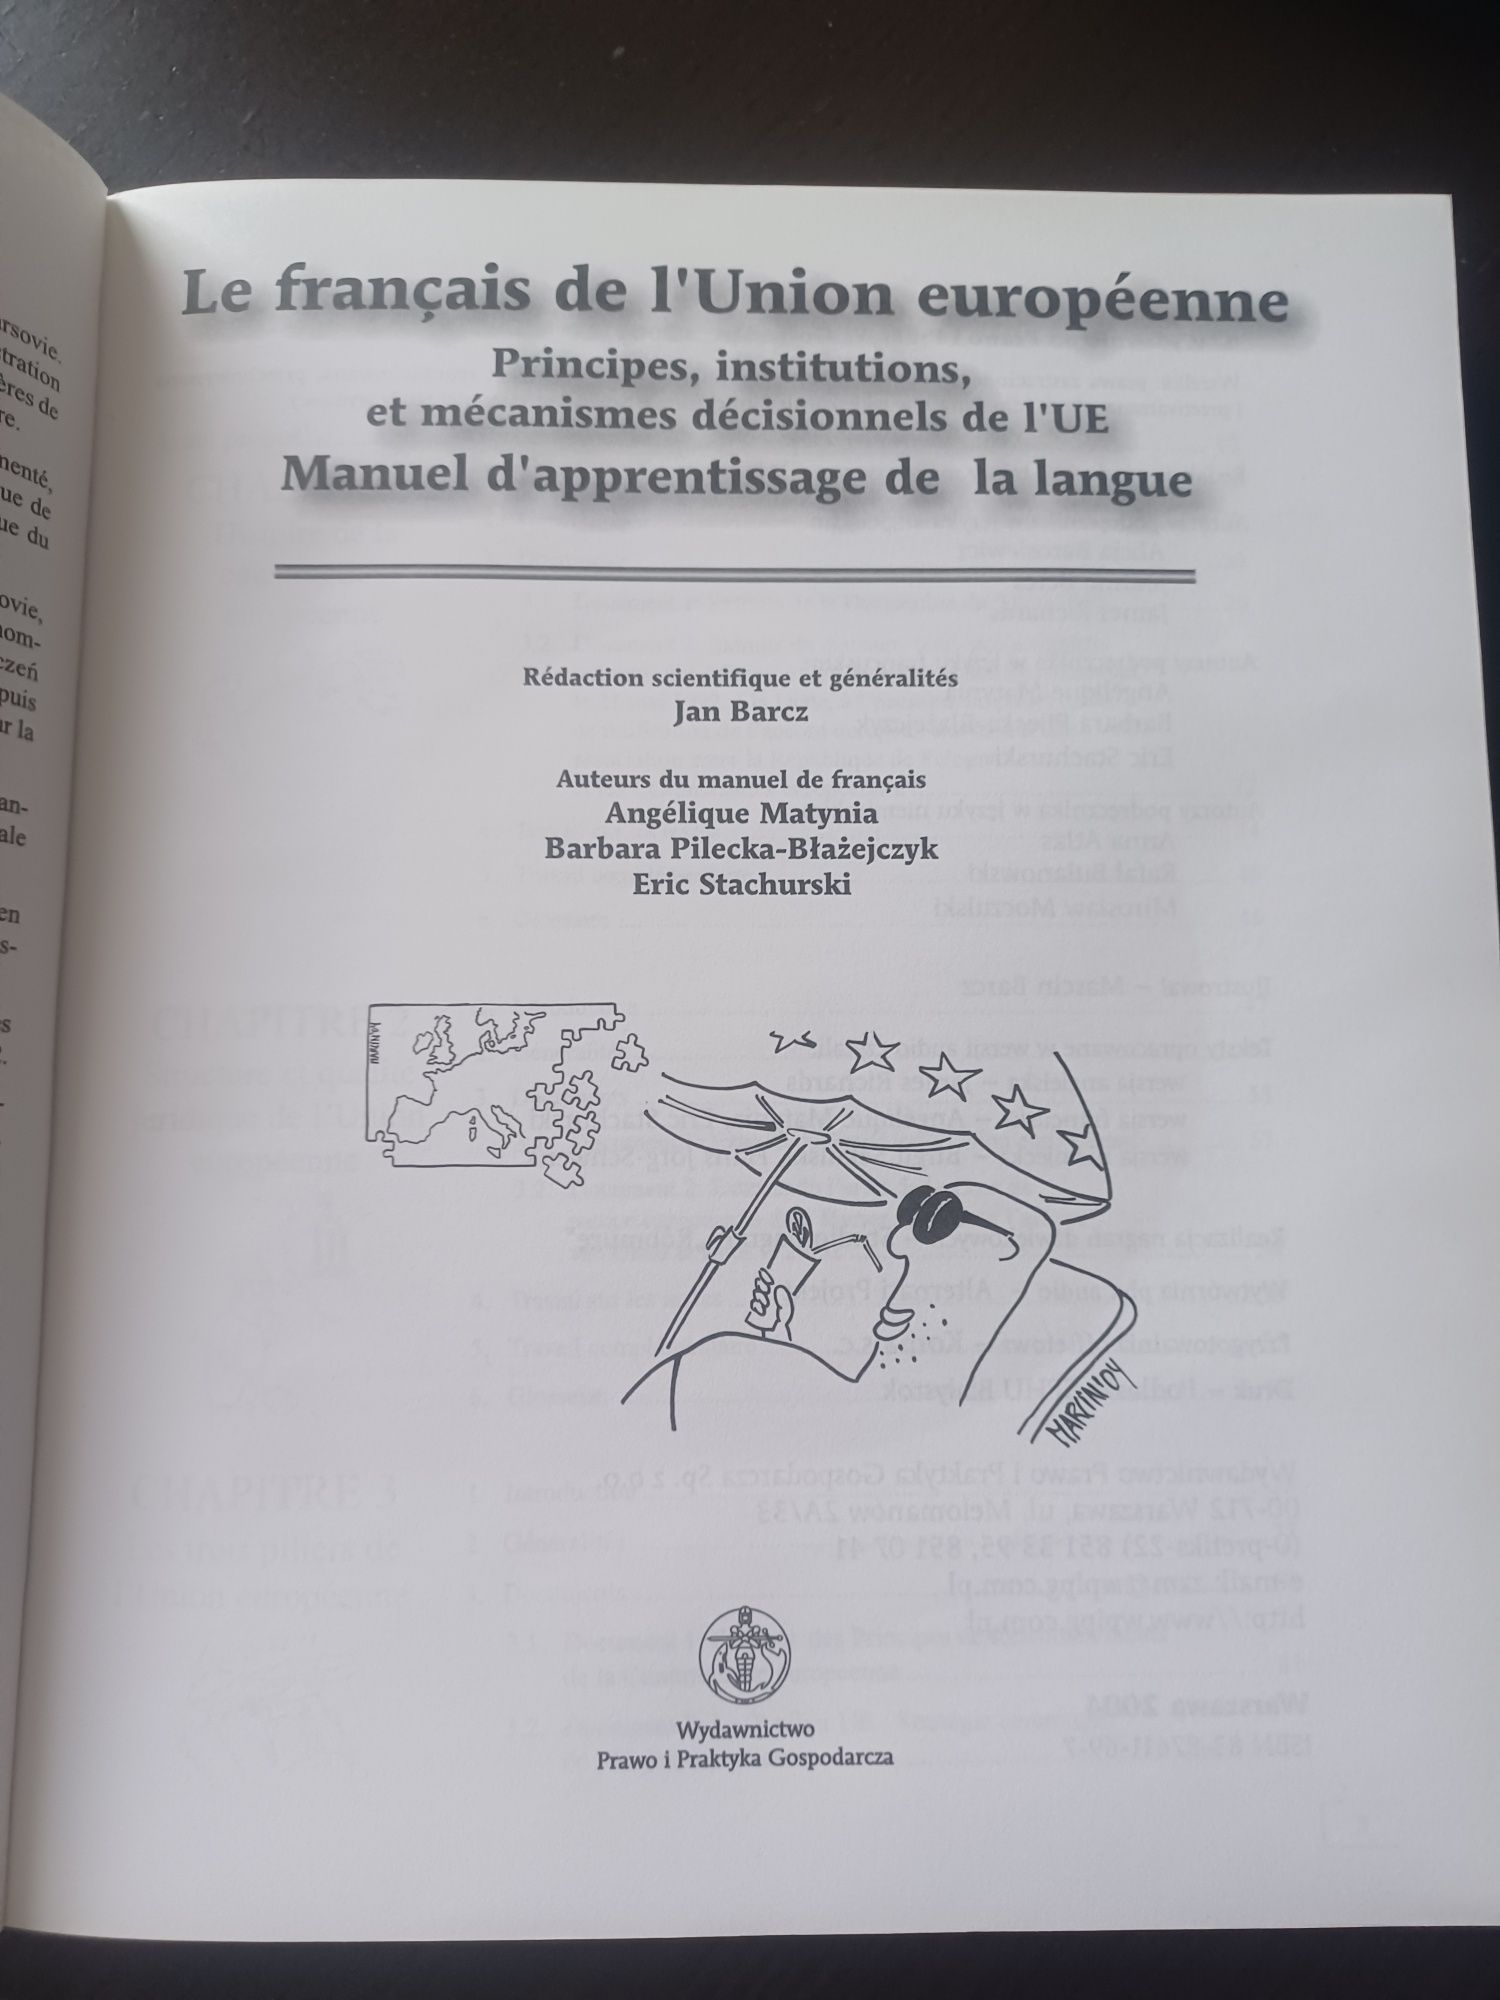 Podręcznik do nauki języka francuskiego, prawniczego